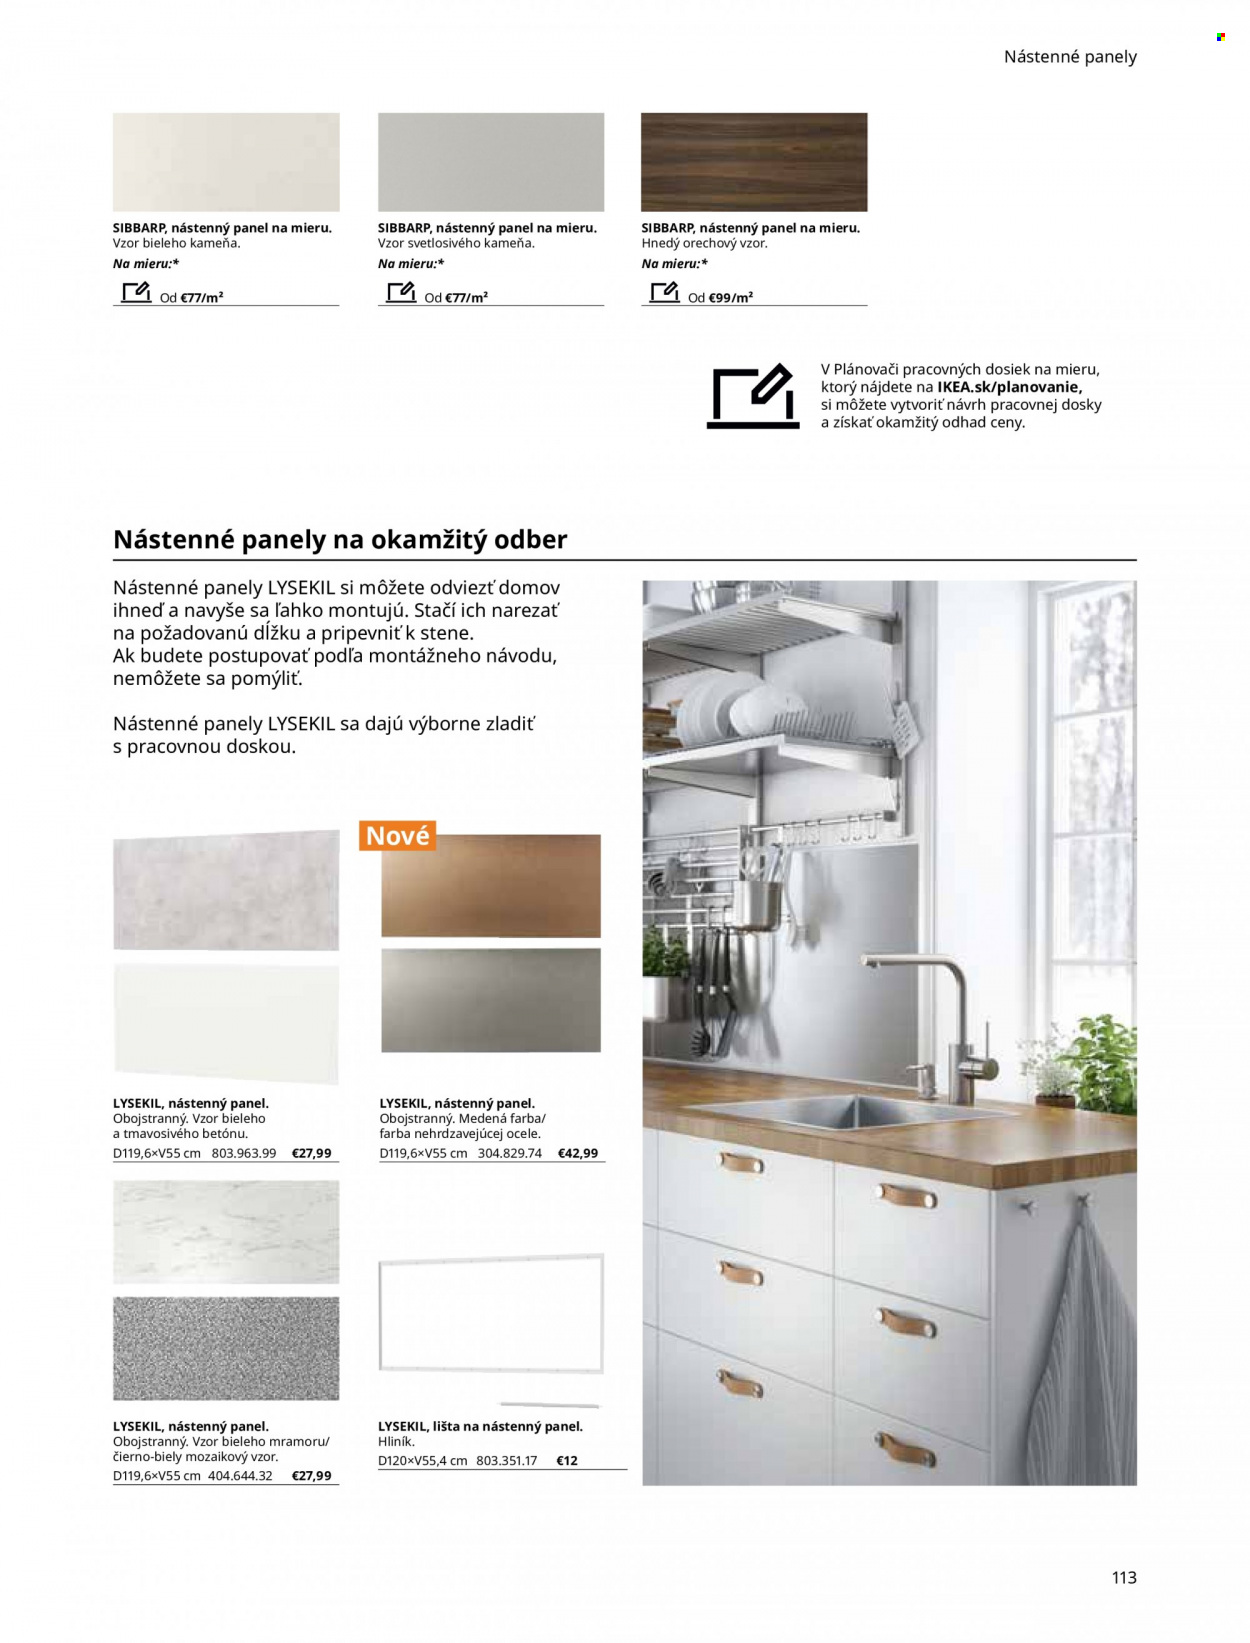 Leták IKEA - Produkty v akcii - nástenný panel. Strana 113.